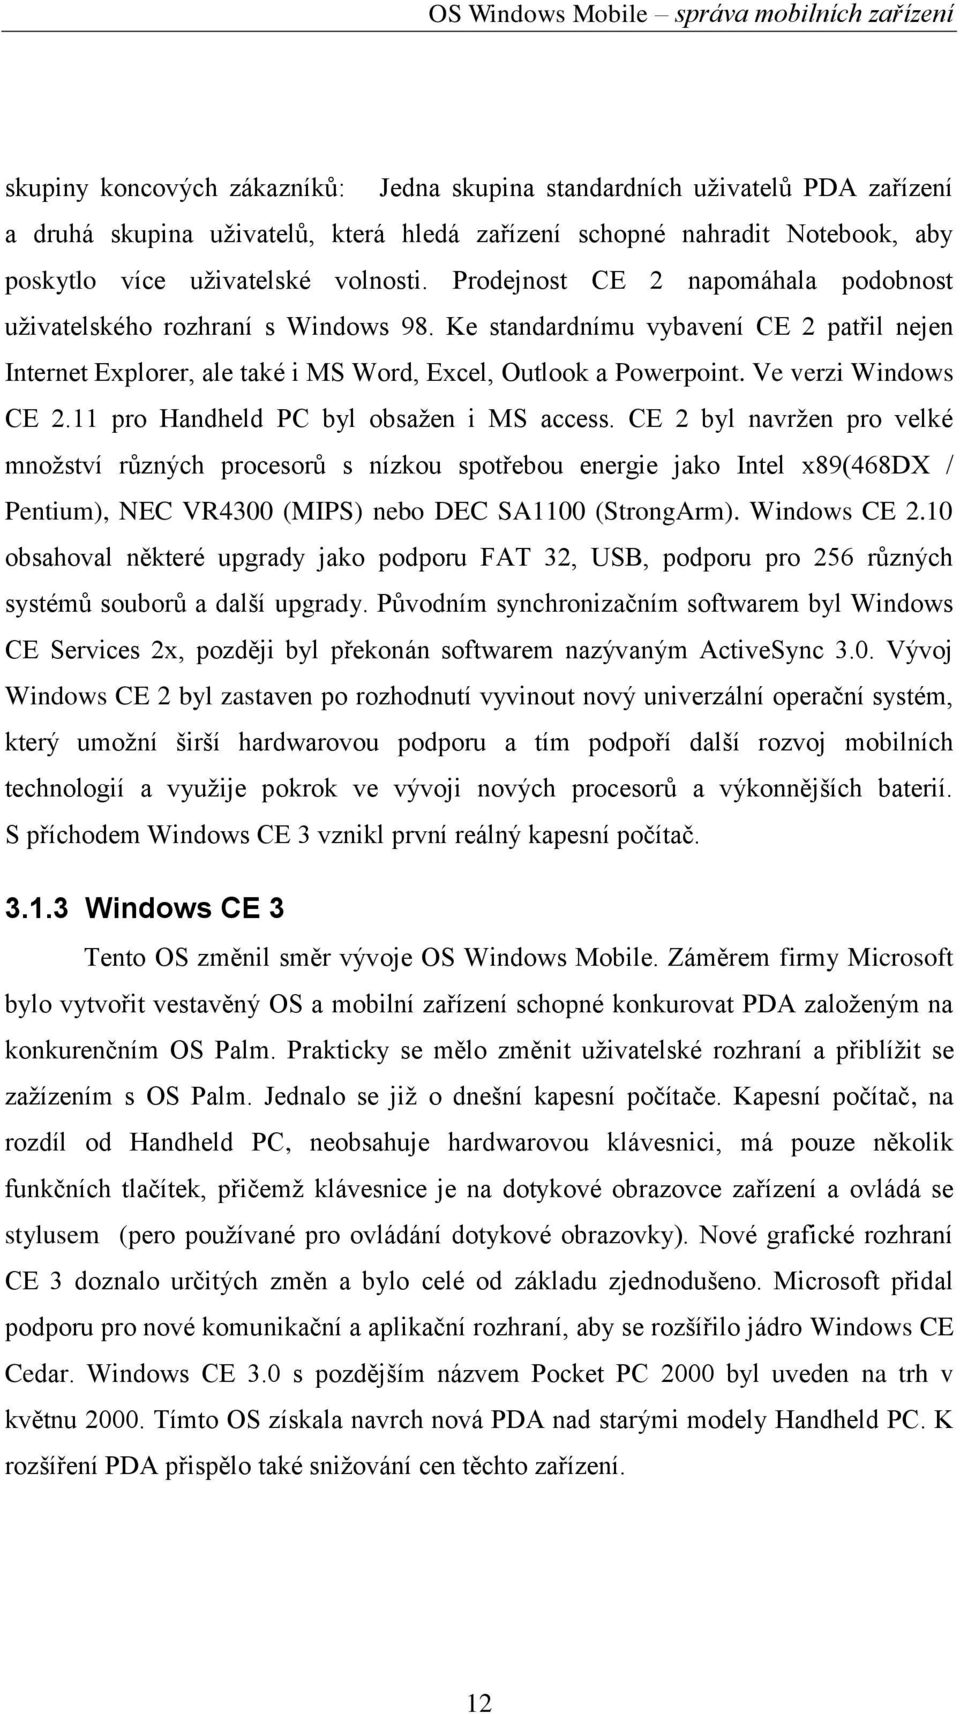 Ve verzi Windows CE 2.11 pro Handheld PC byl obsaţen i MS access.